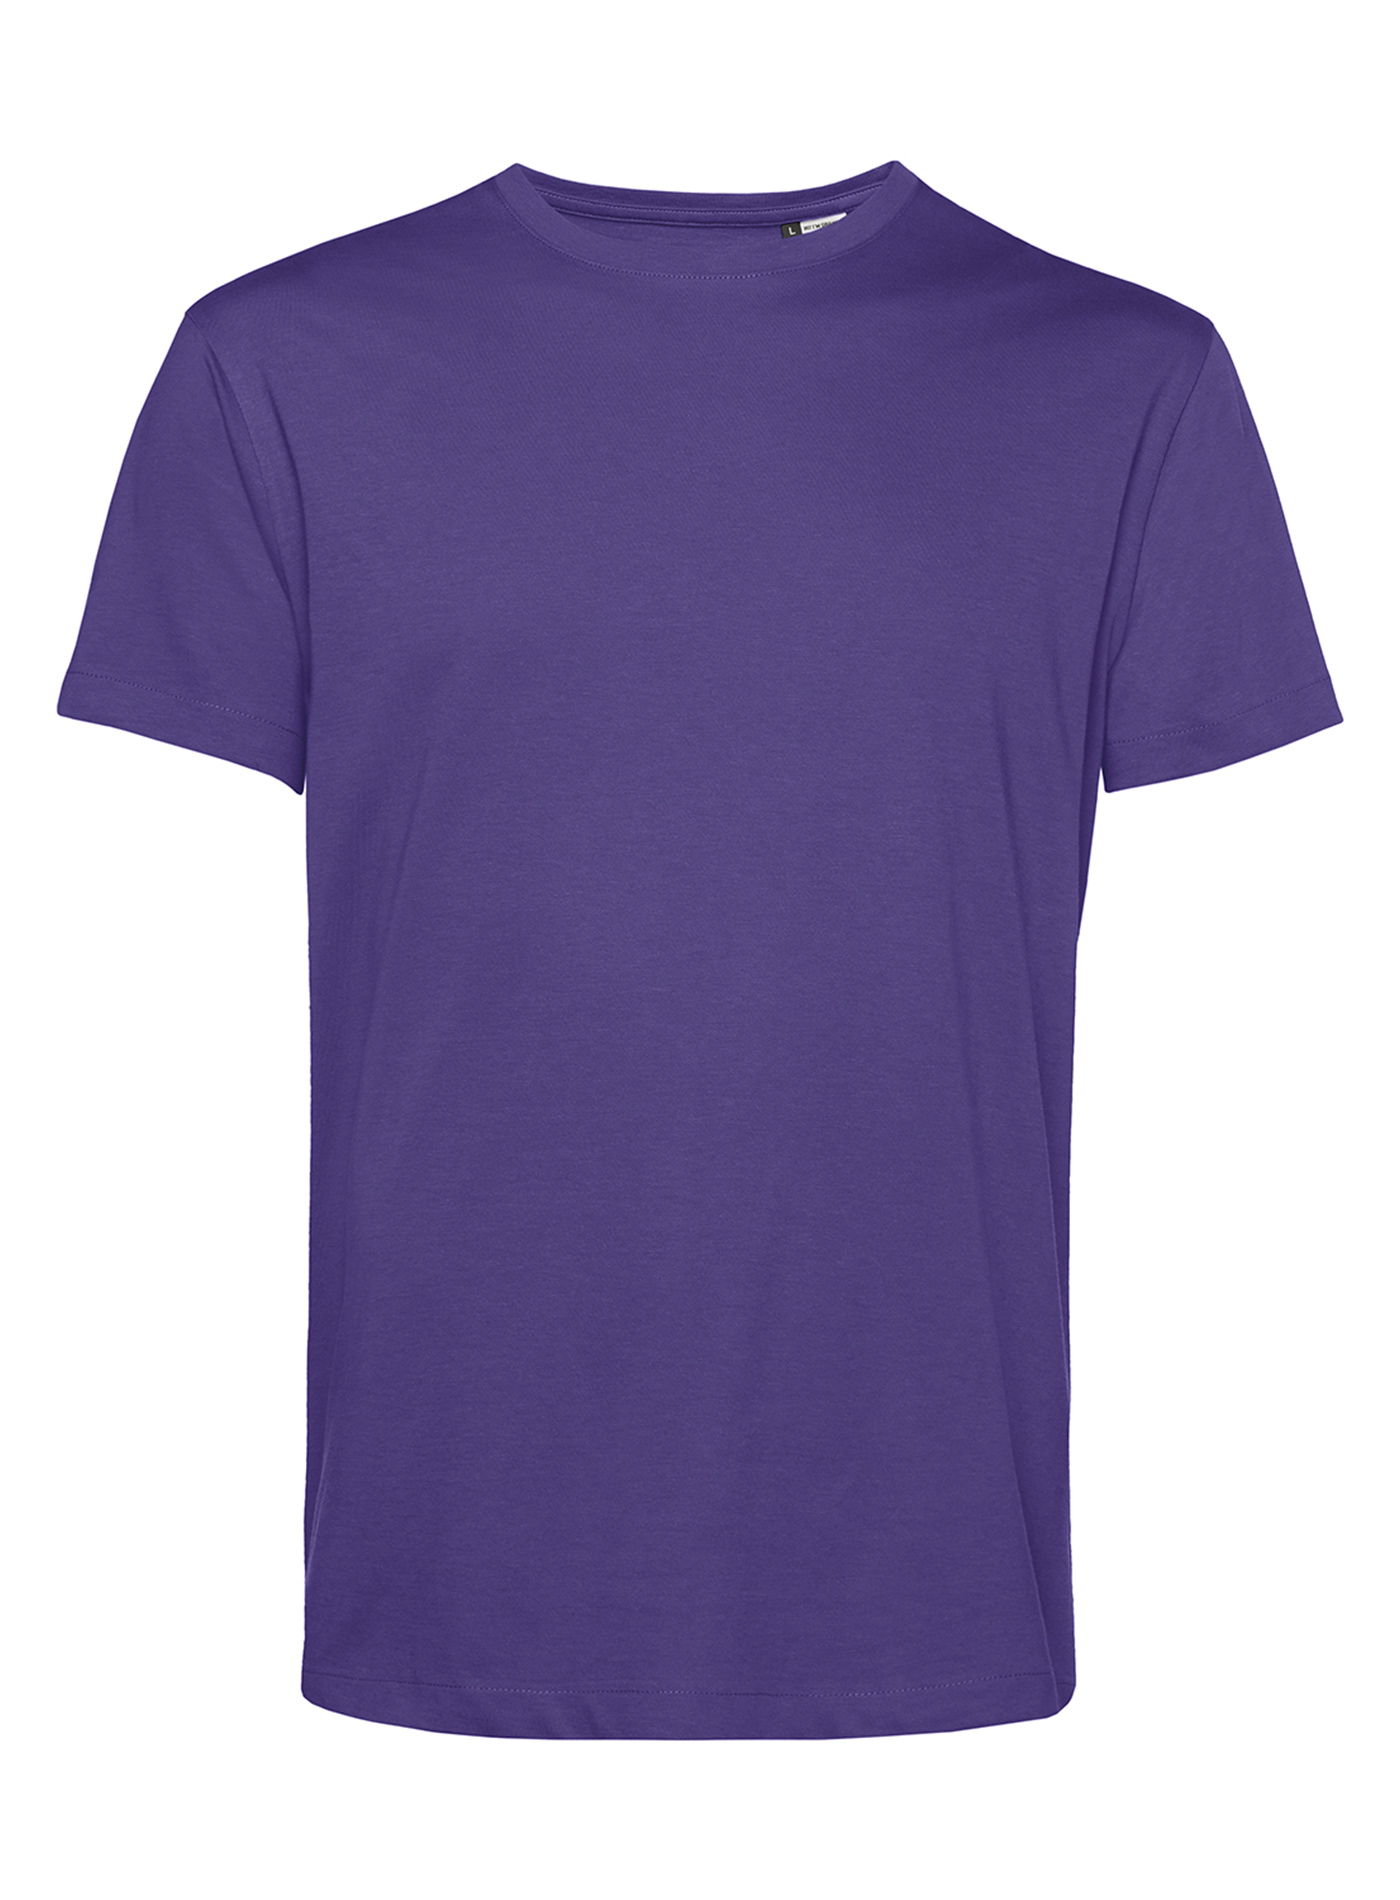 Pánské tričko Organic B&C - Tmavě fialová XL